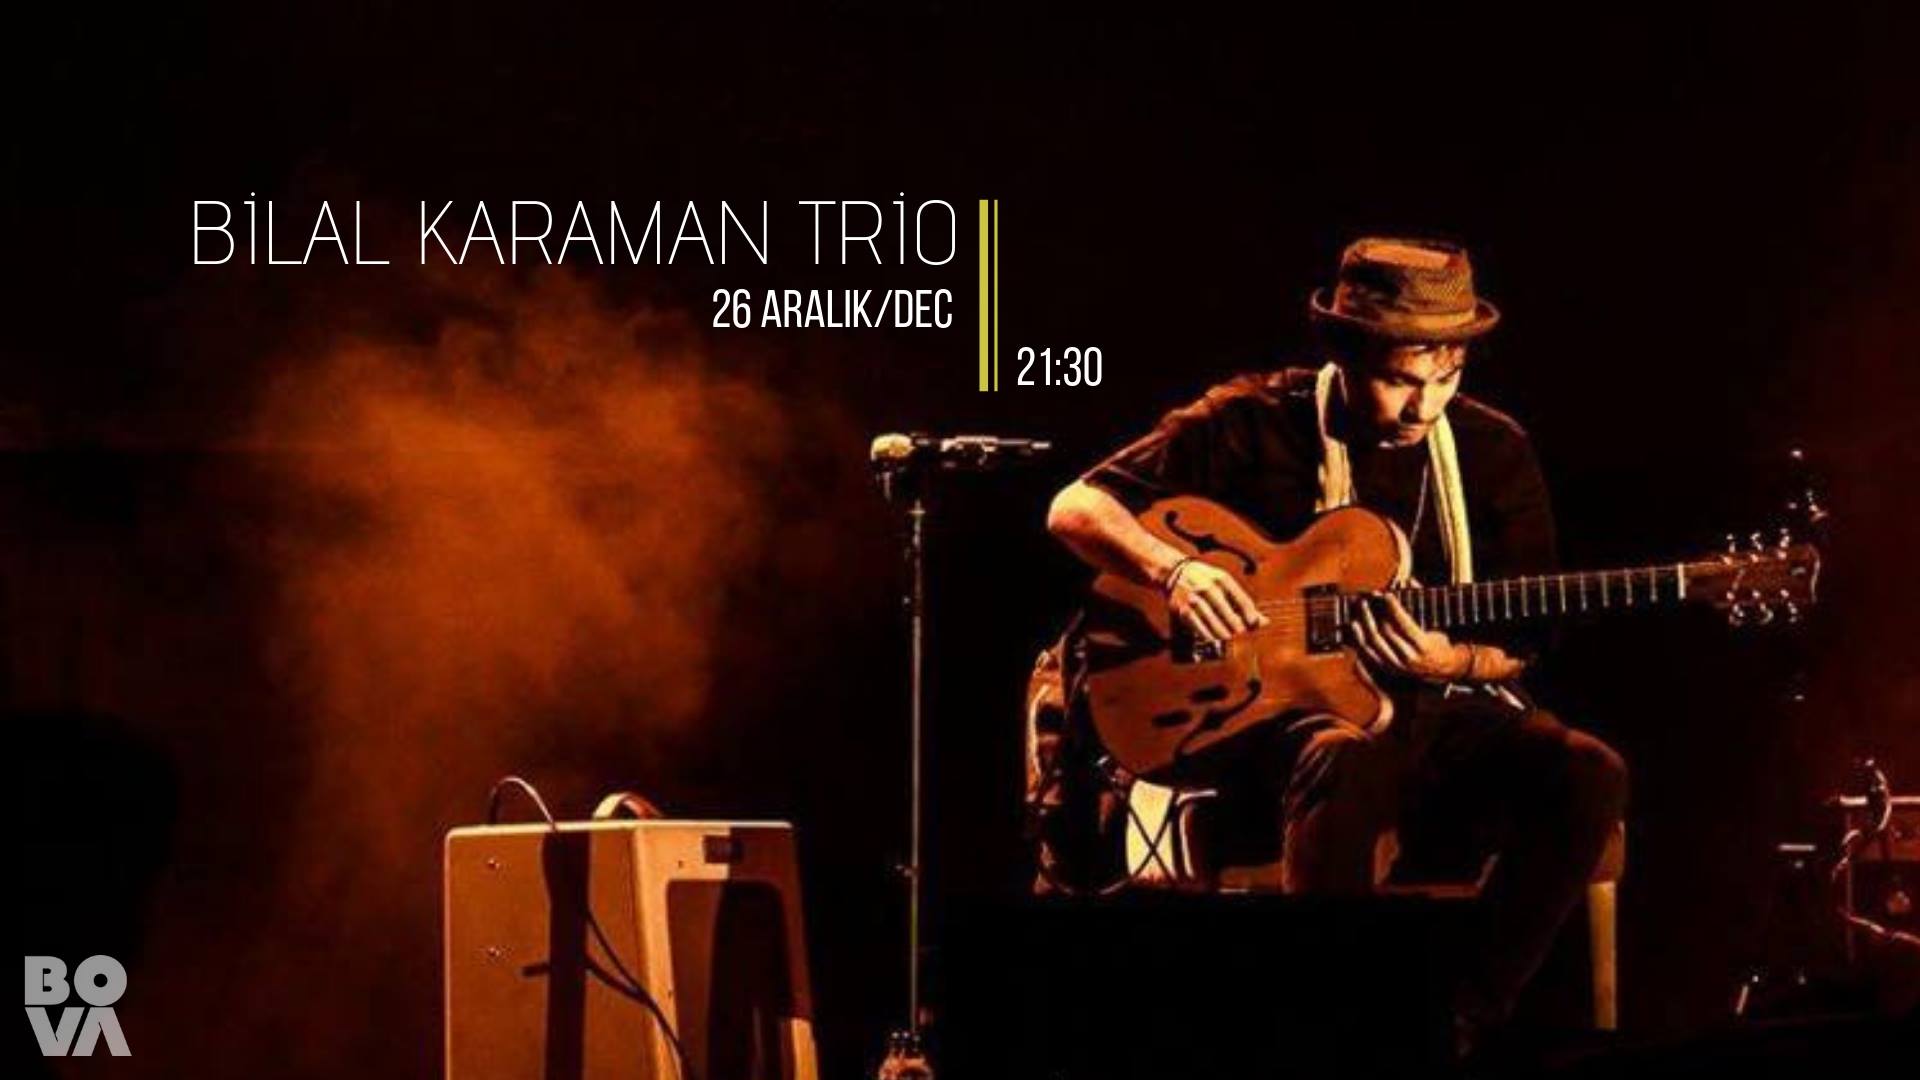 Bilal Karaman Trio